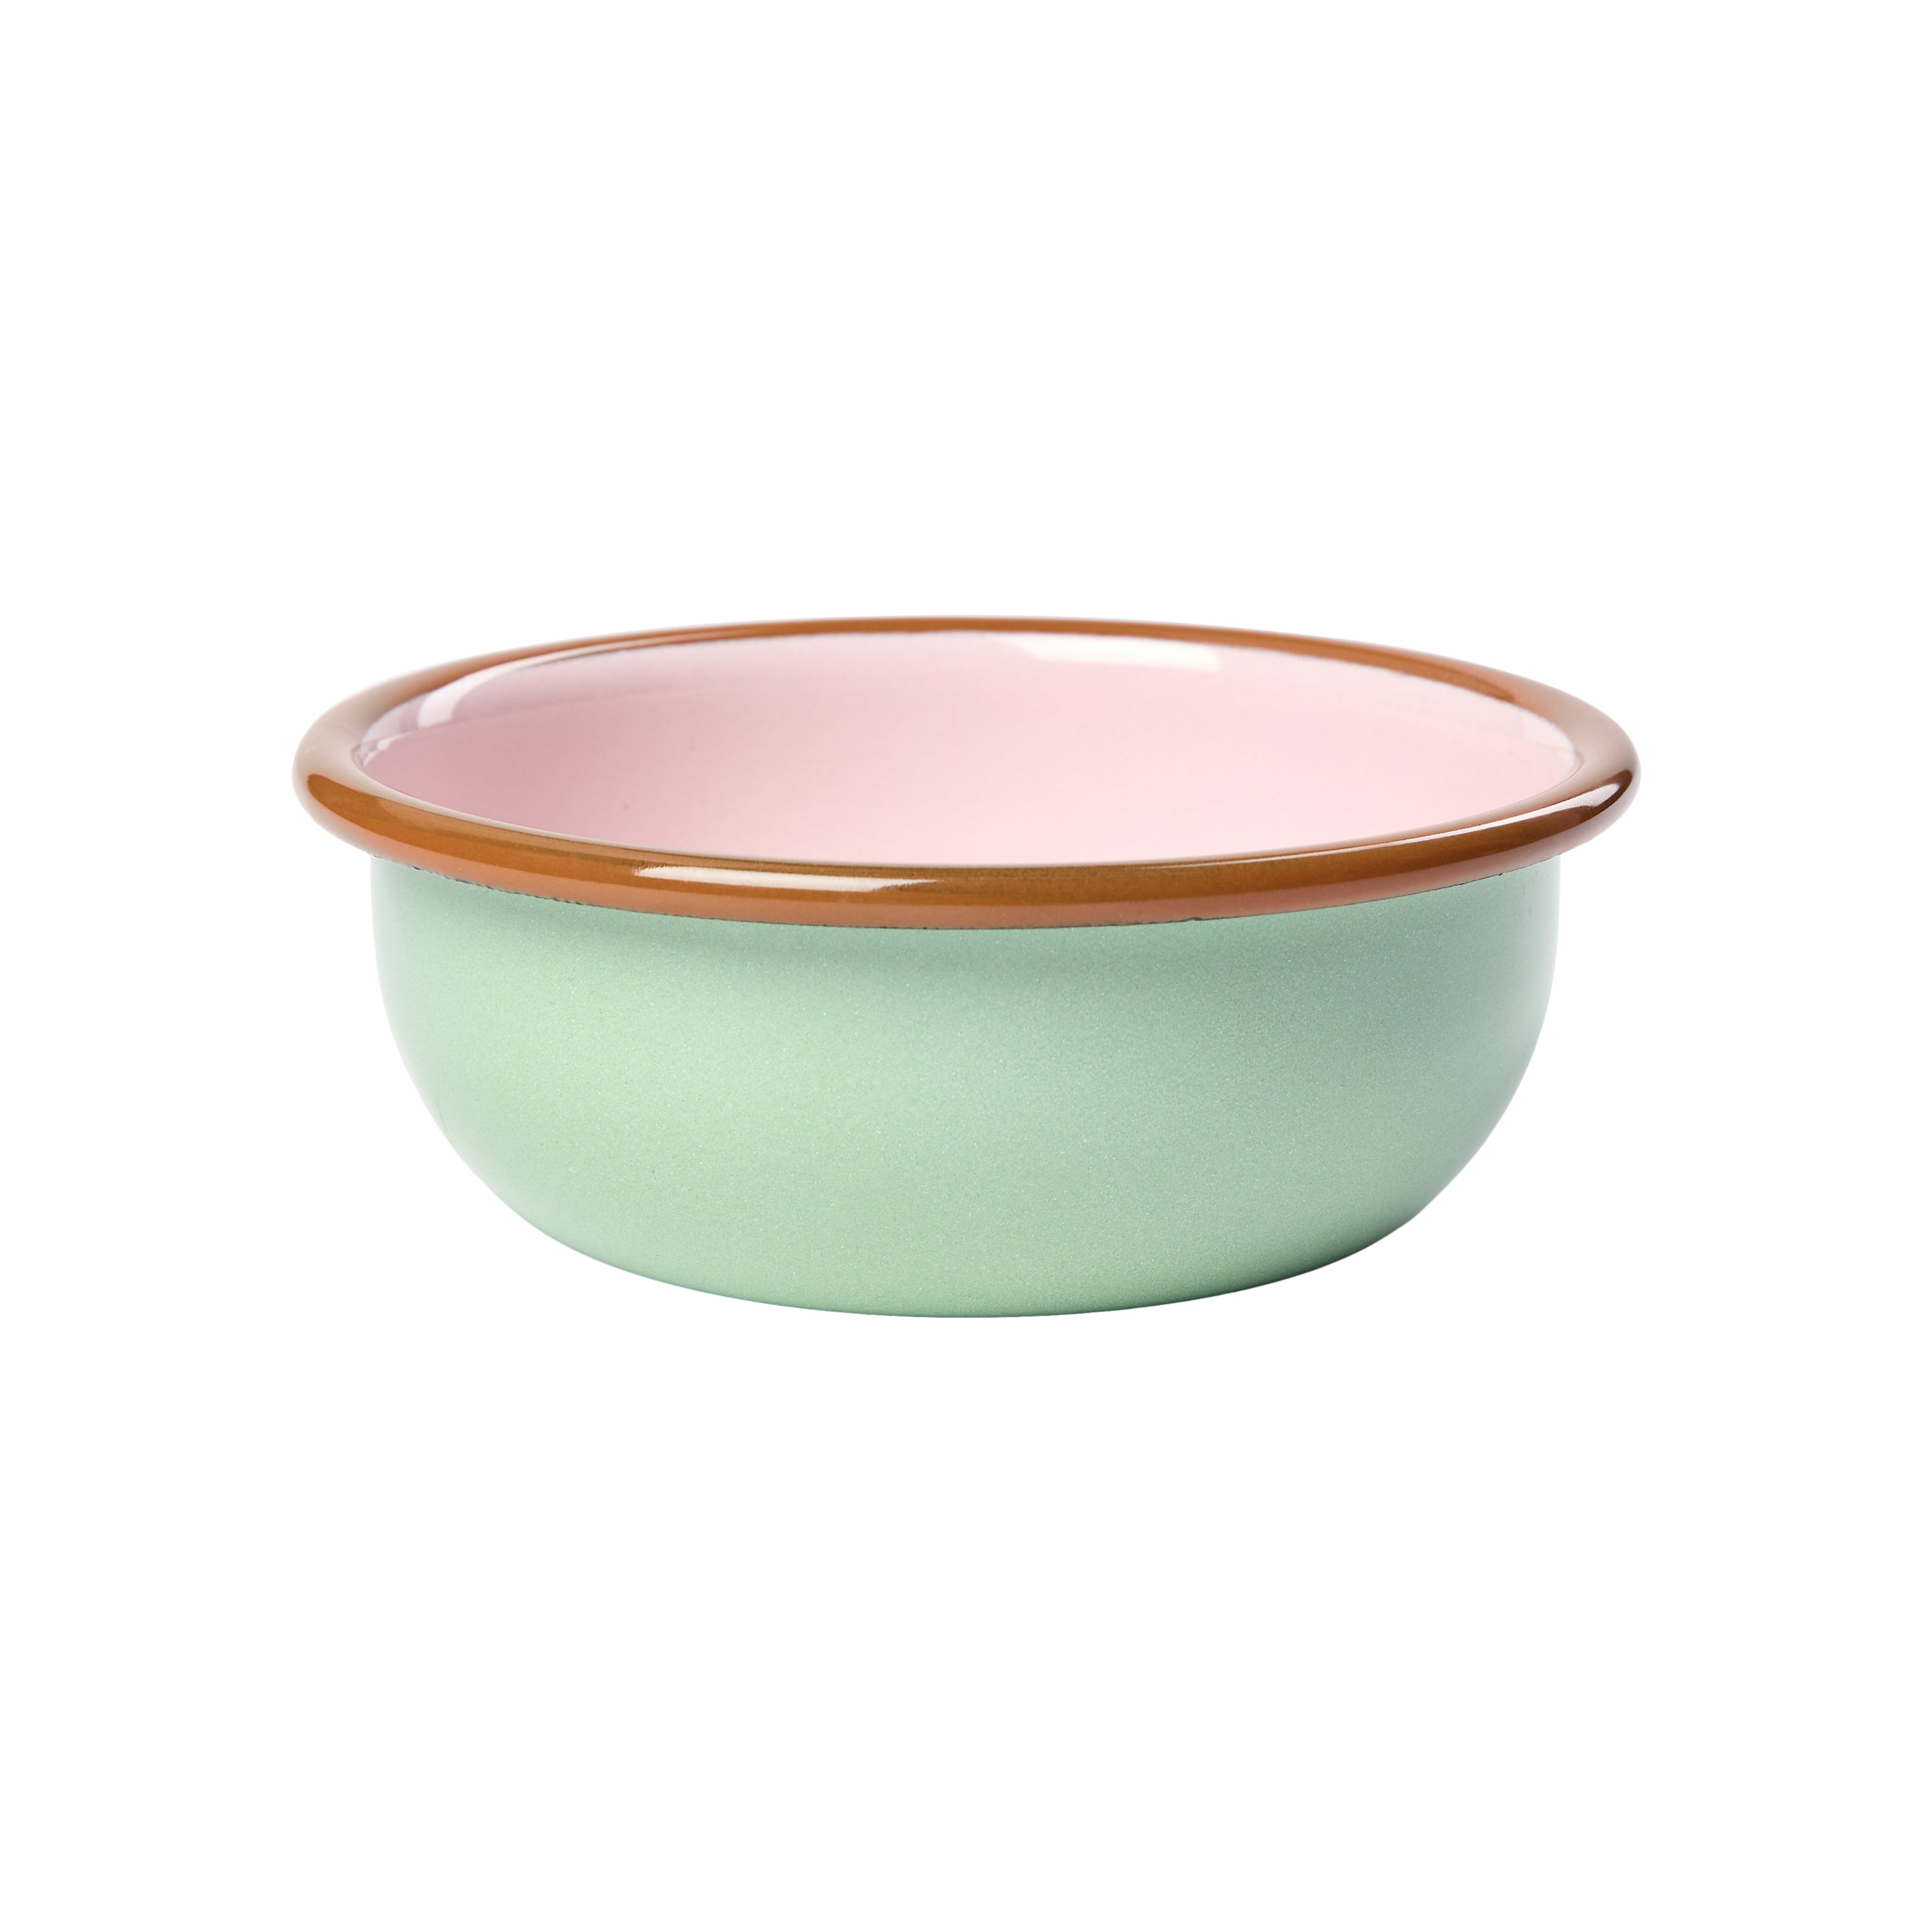 Billede af Elifle - Bowl 14 skål - mint/lyserød/okker